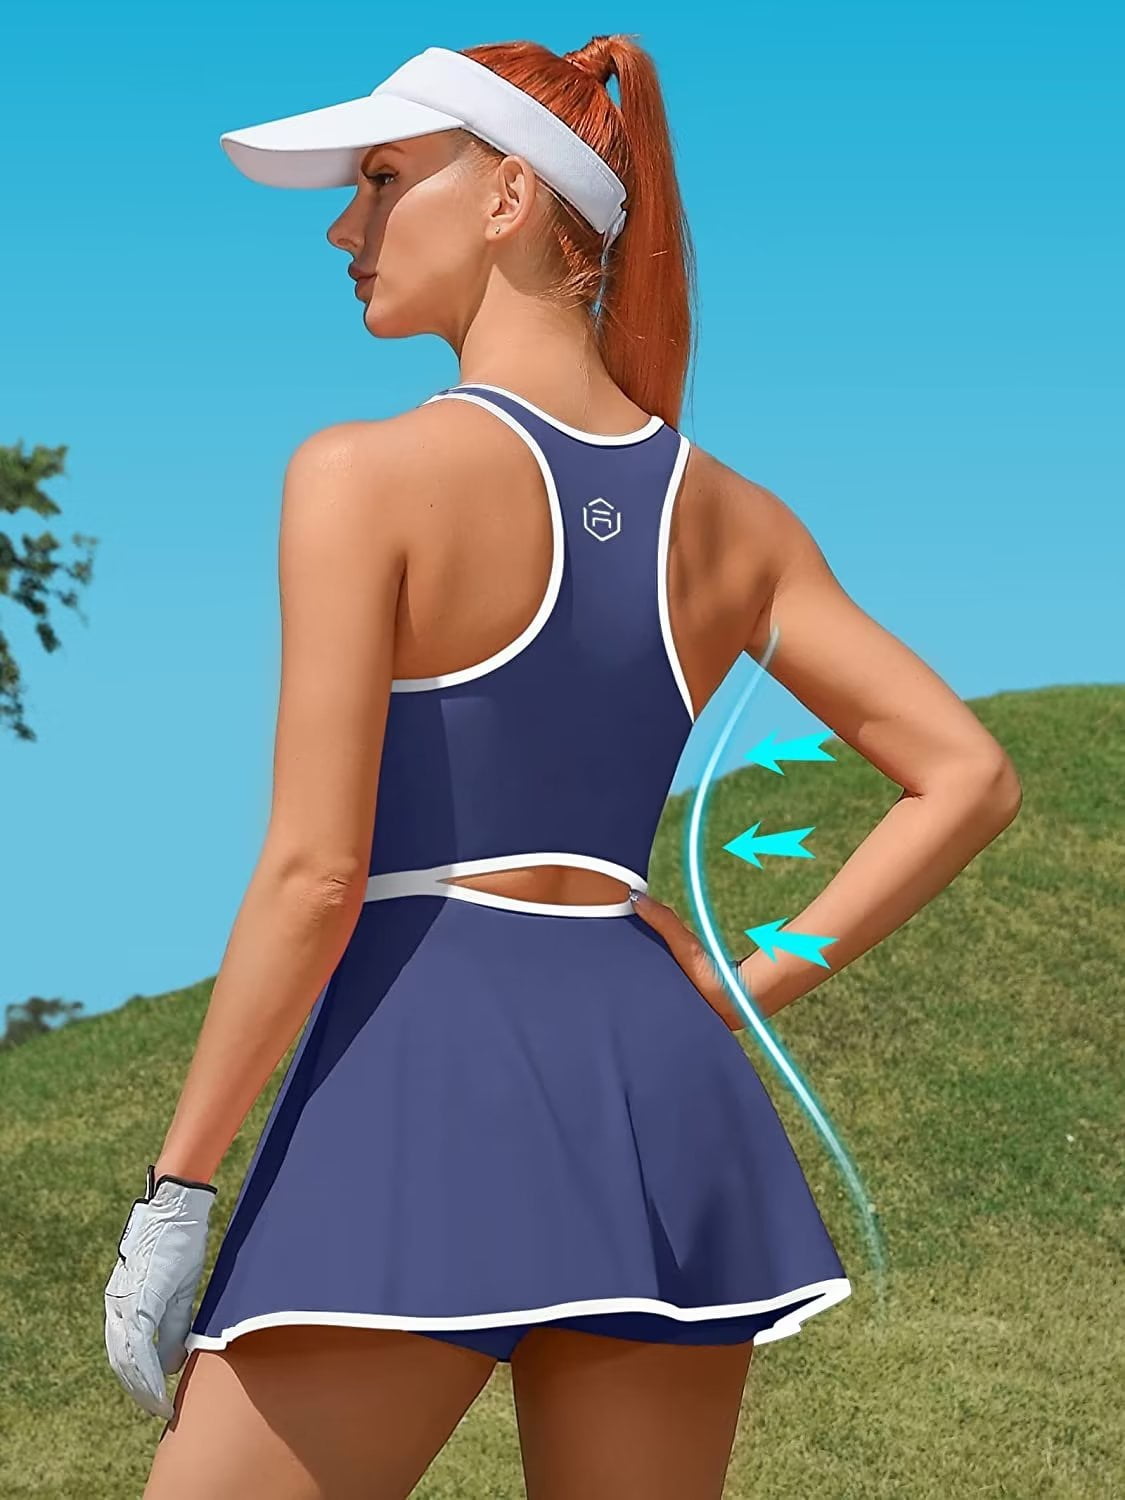 tennis dress womens